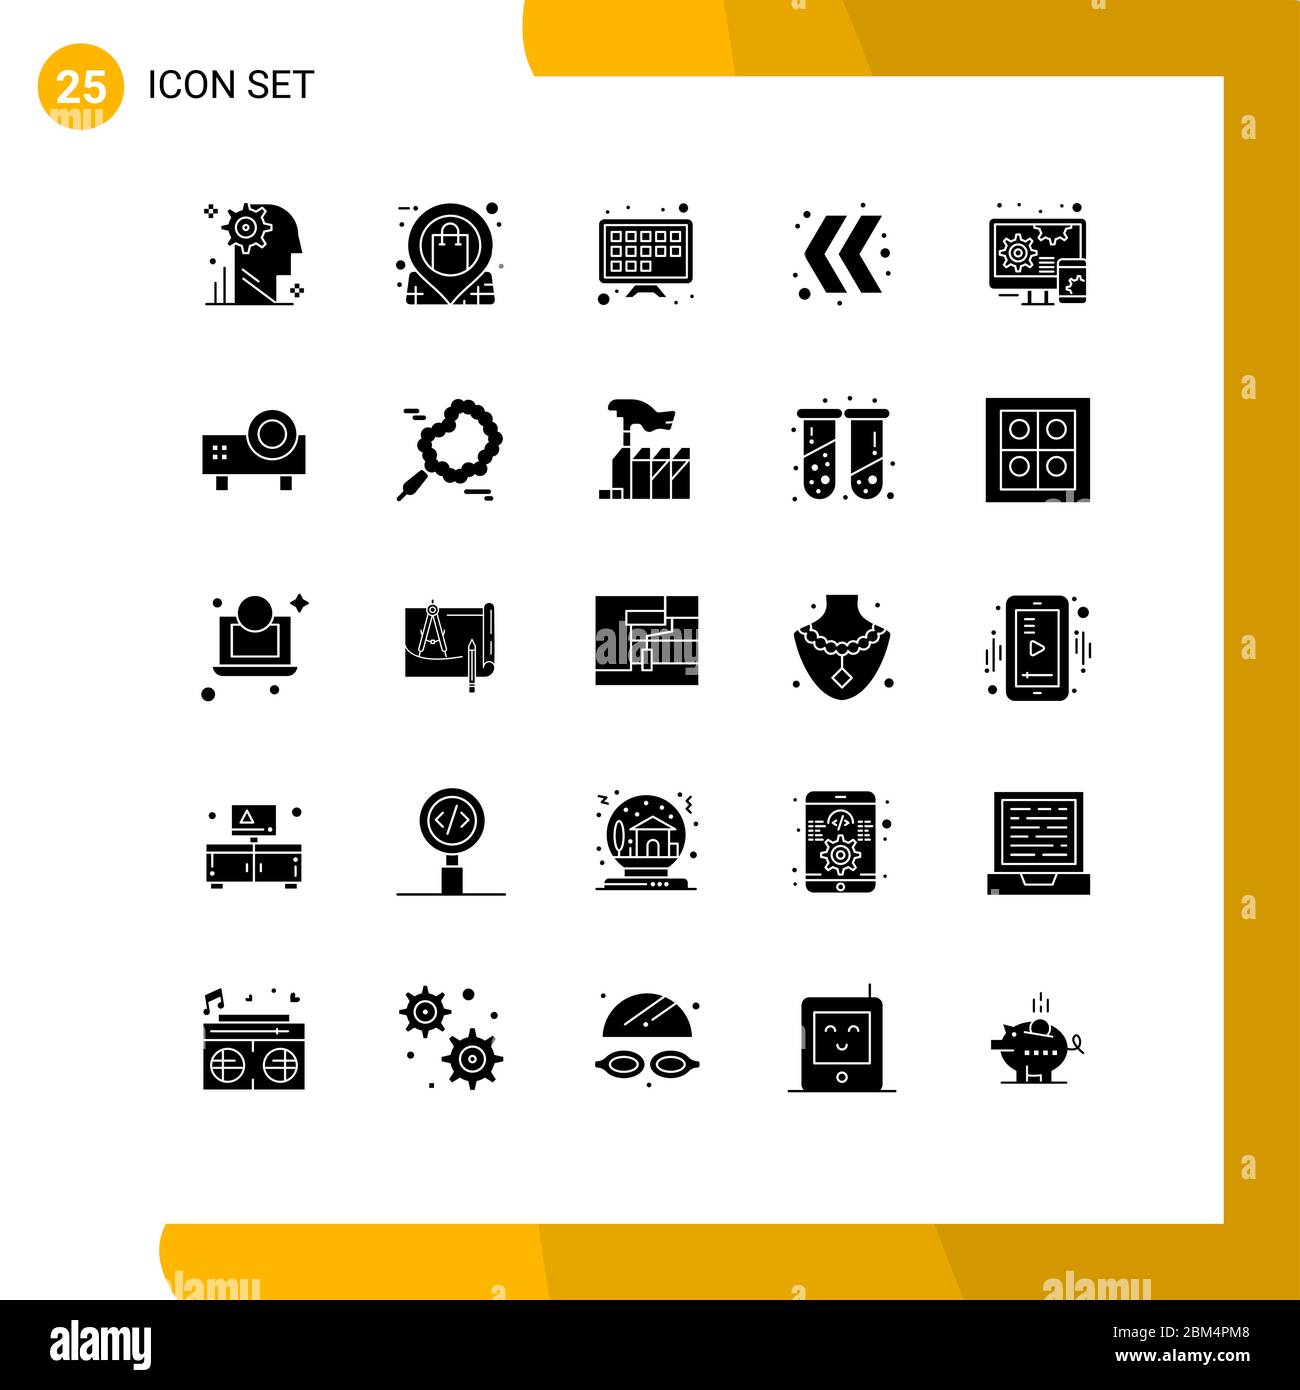 25 interfaccia utente Solid Glyph pacchetto di segni moderni e simboli di design, sinistra, negozio, chevron, tv schermo elementi di progettazione vettoriale editabili Illustrazione Vettoriale